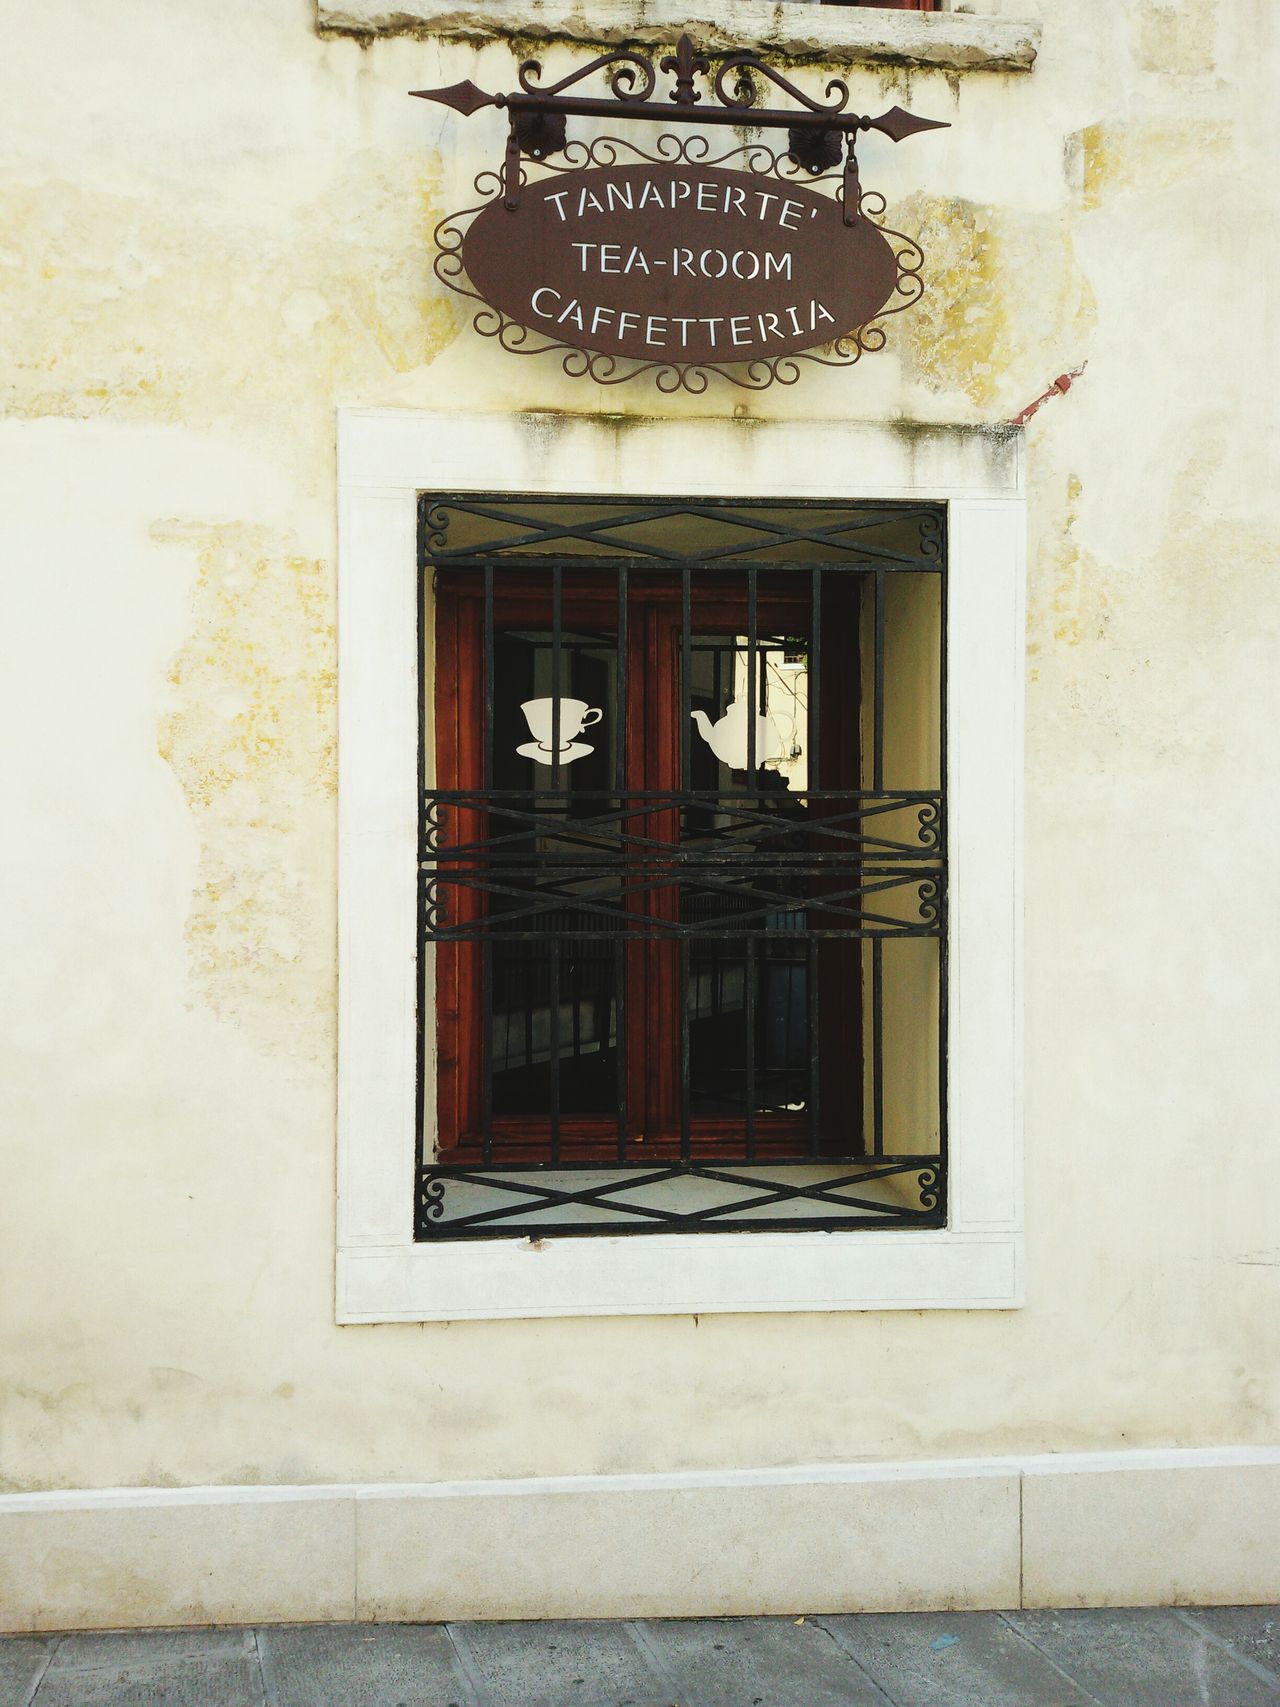 Tea-room